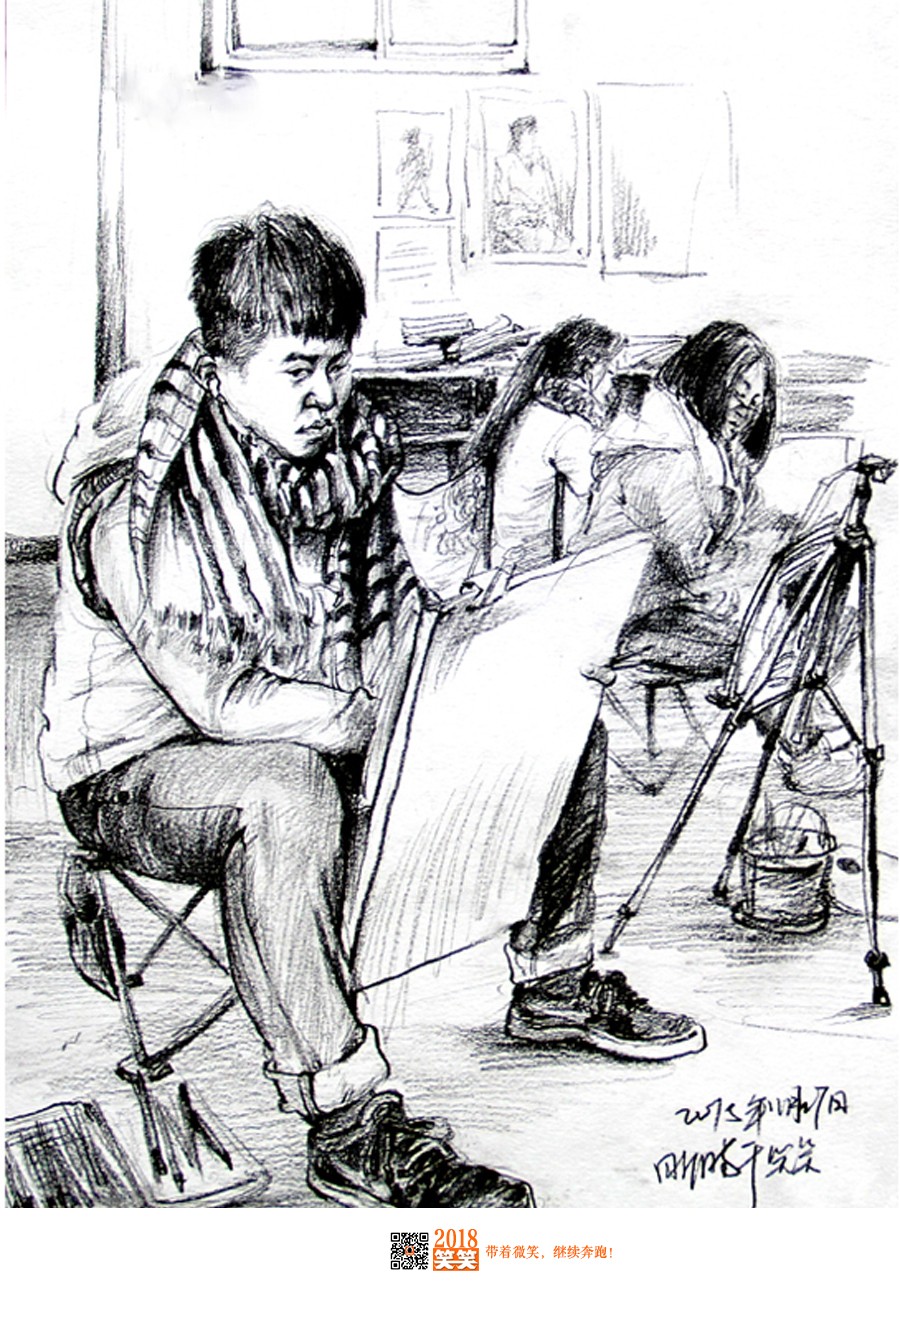 郑州画室,郑州美术高考培训,笑笑精品速写展示